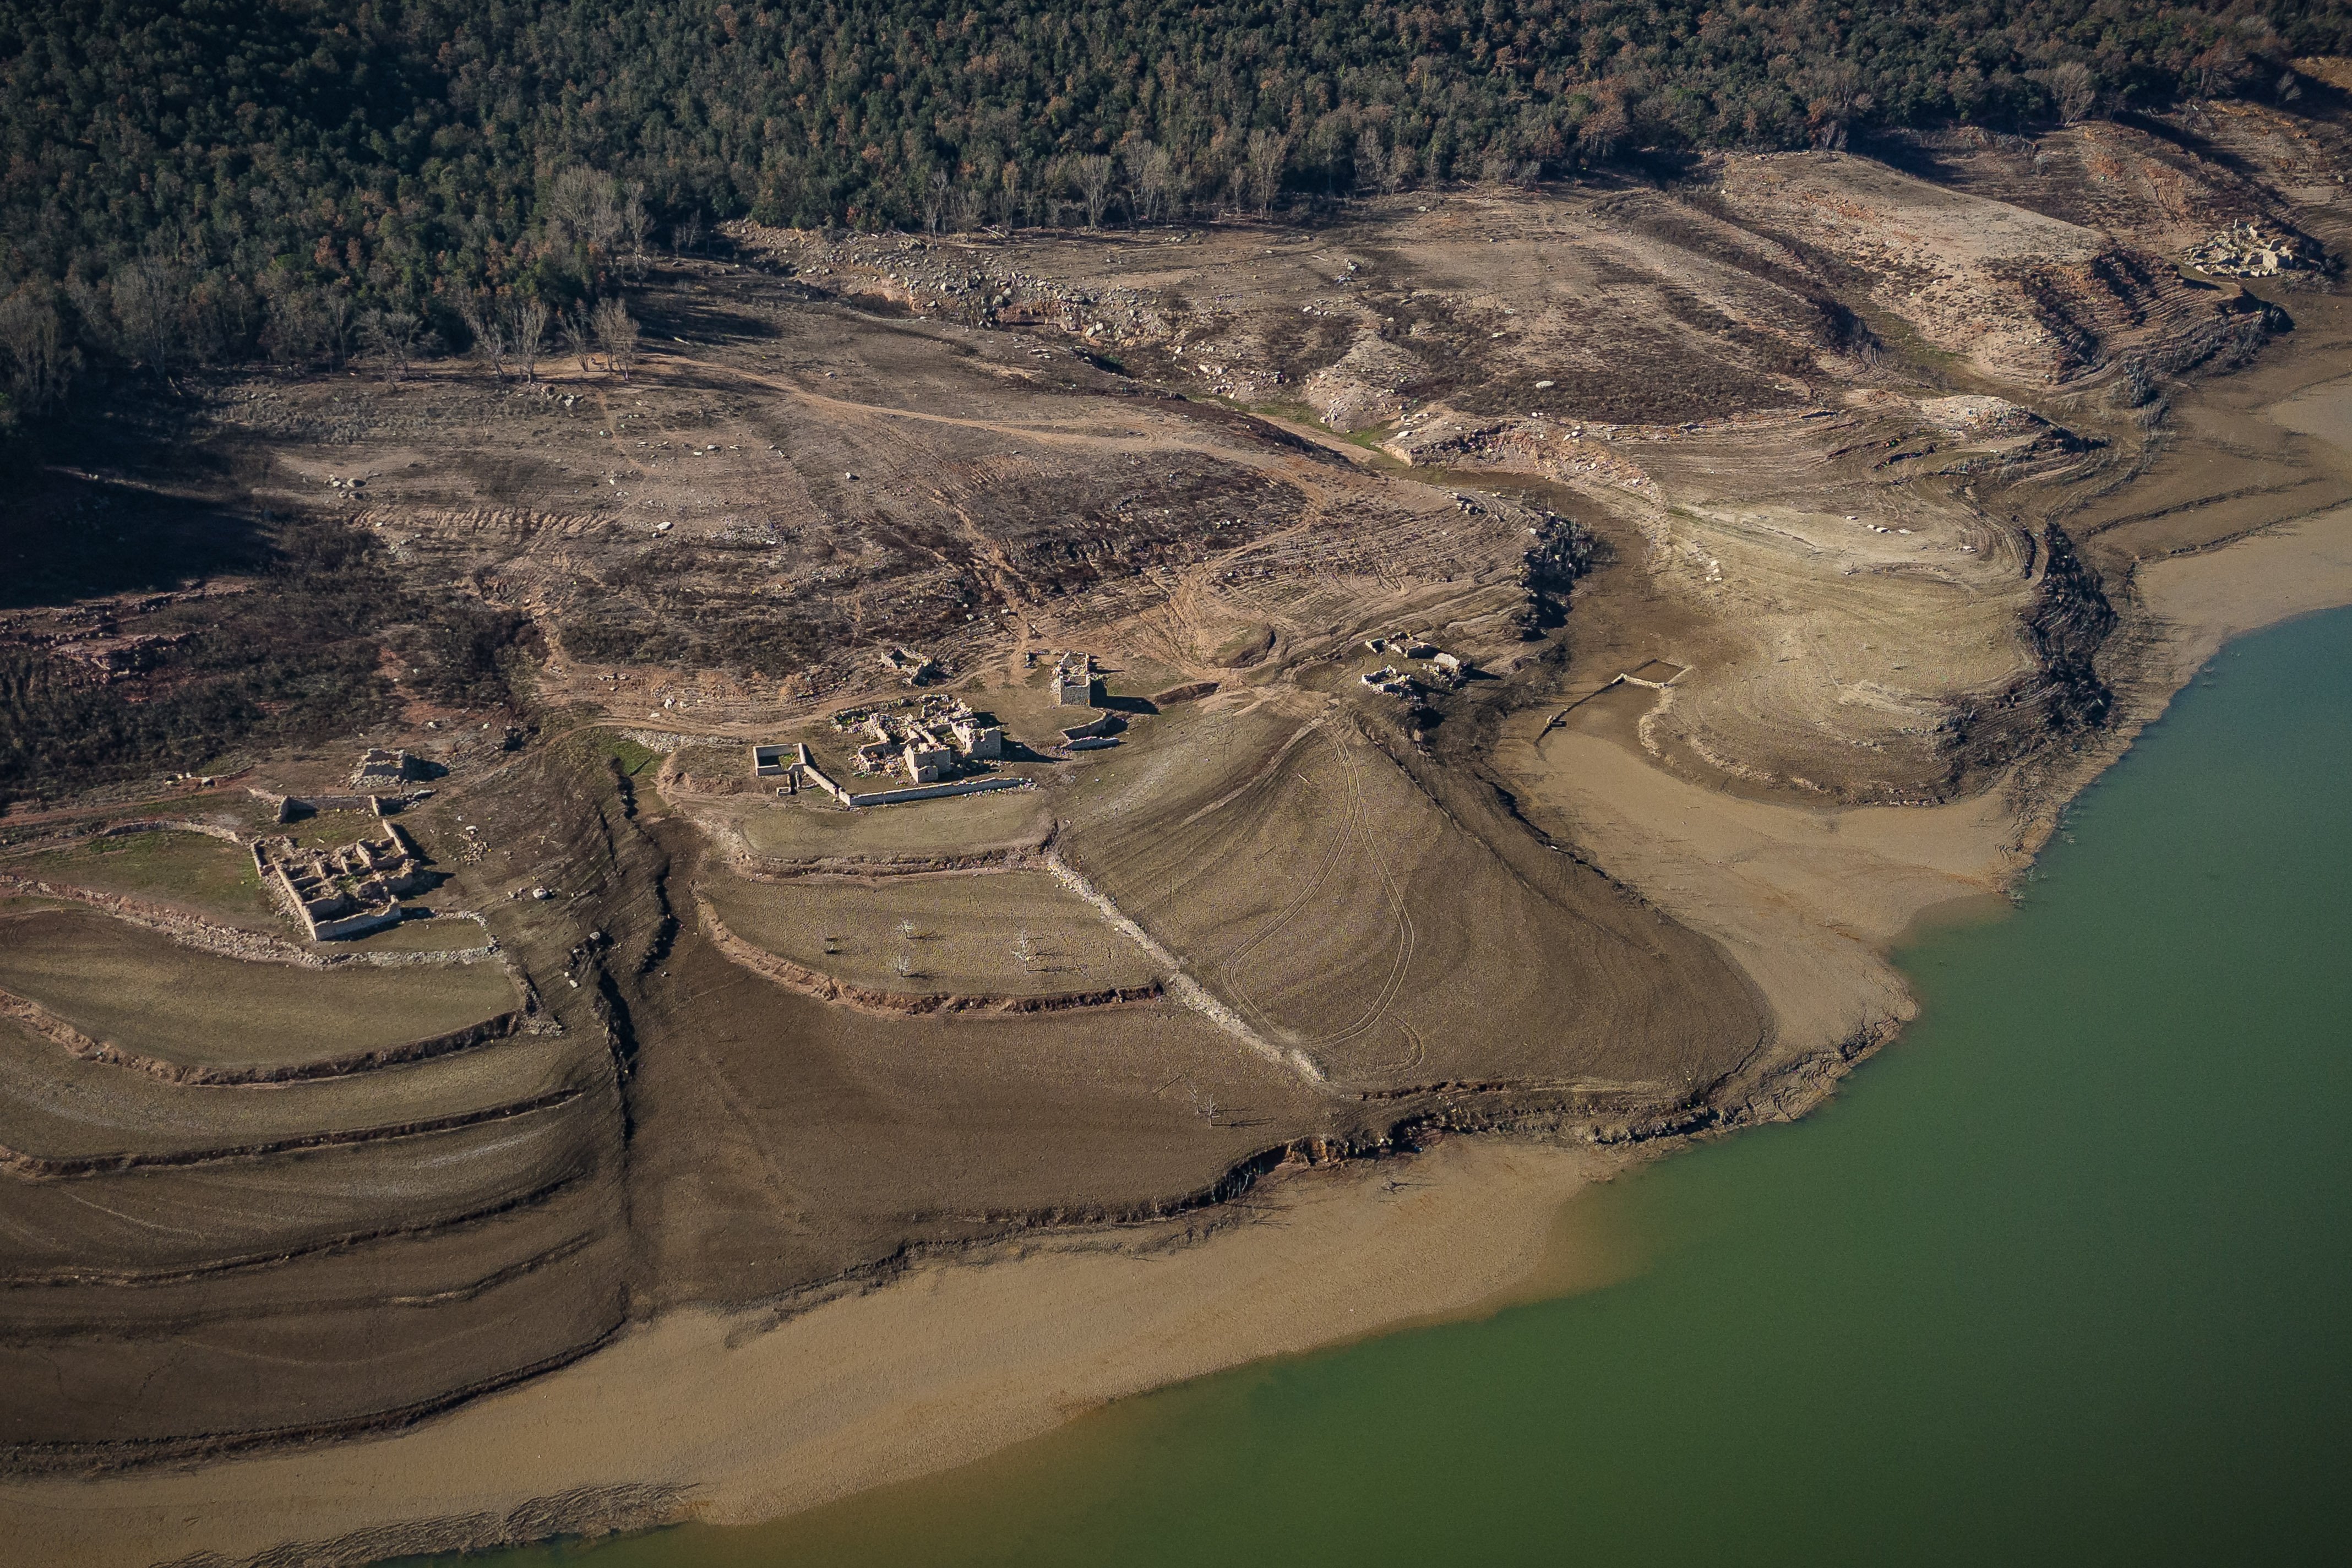 Les imatges del pantà de Sau a vista de dron esgarrifen: només té el 4,74% d’aigua, el seu mínim històric